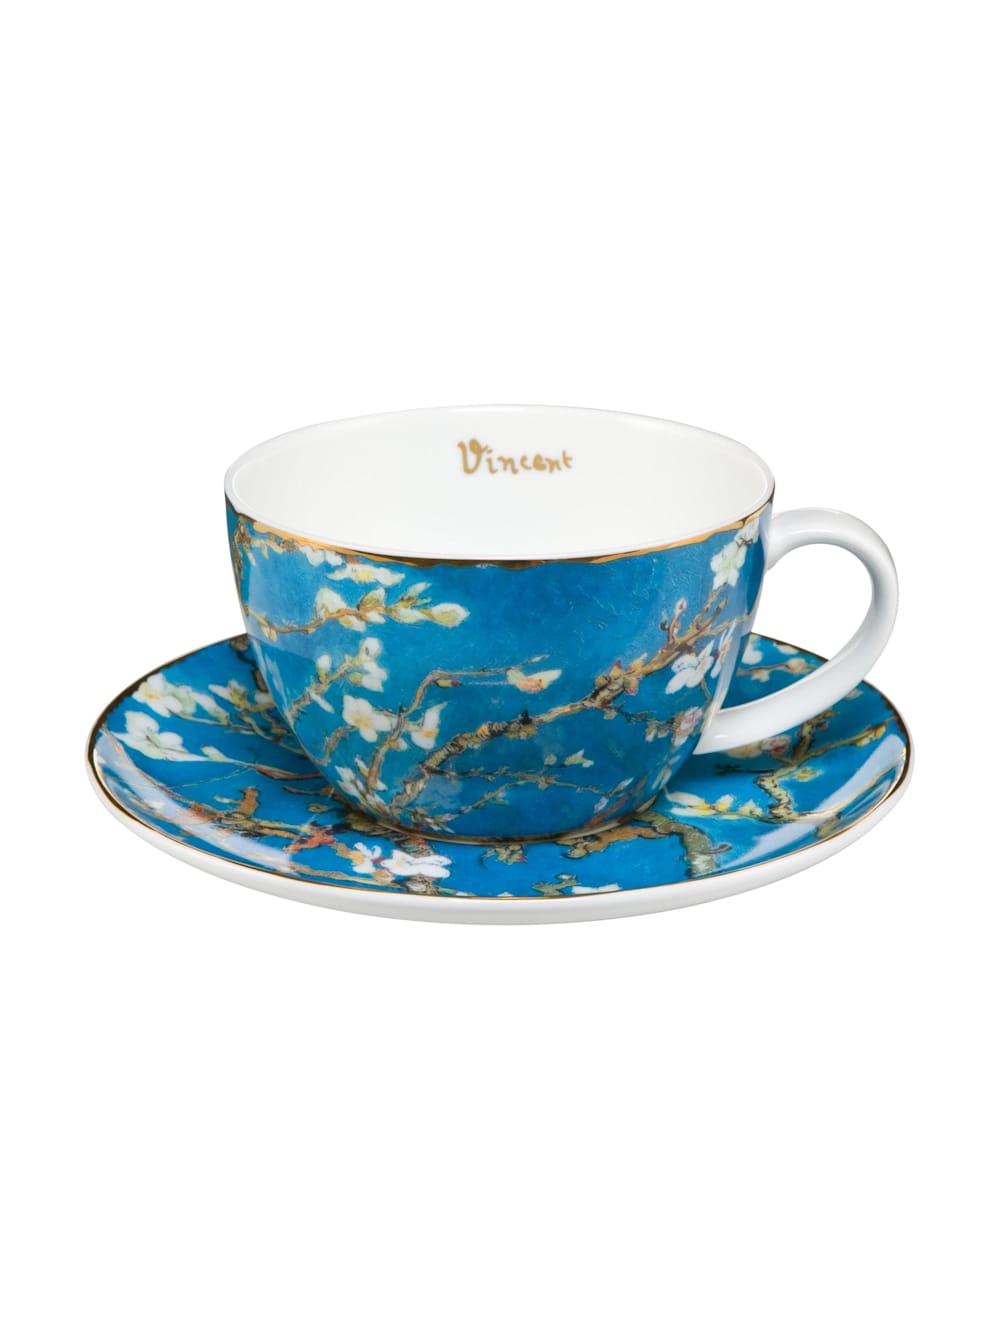 Goebel Teetasse Vincent van Gogh - Mandelbaum blau | Klingel